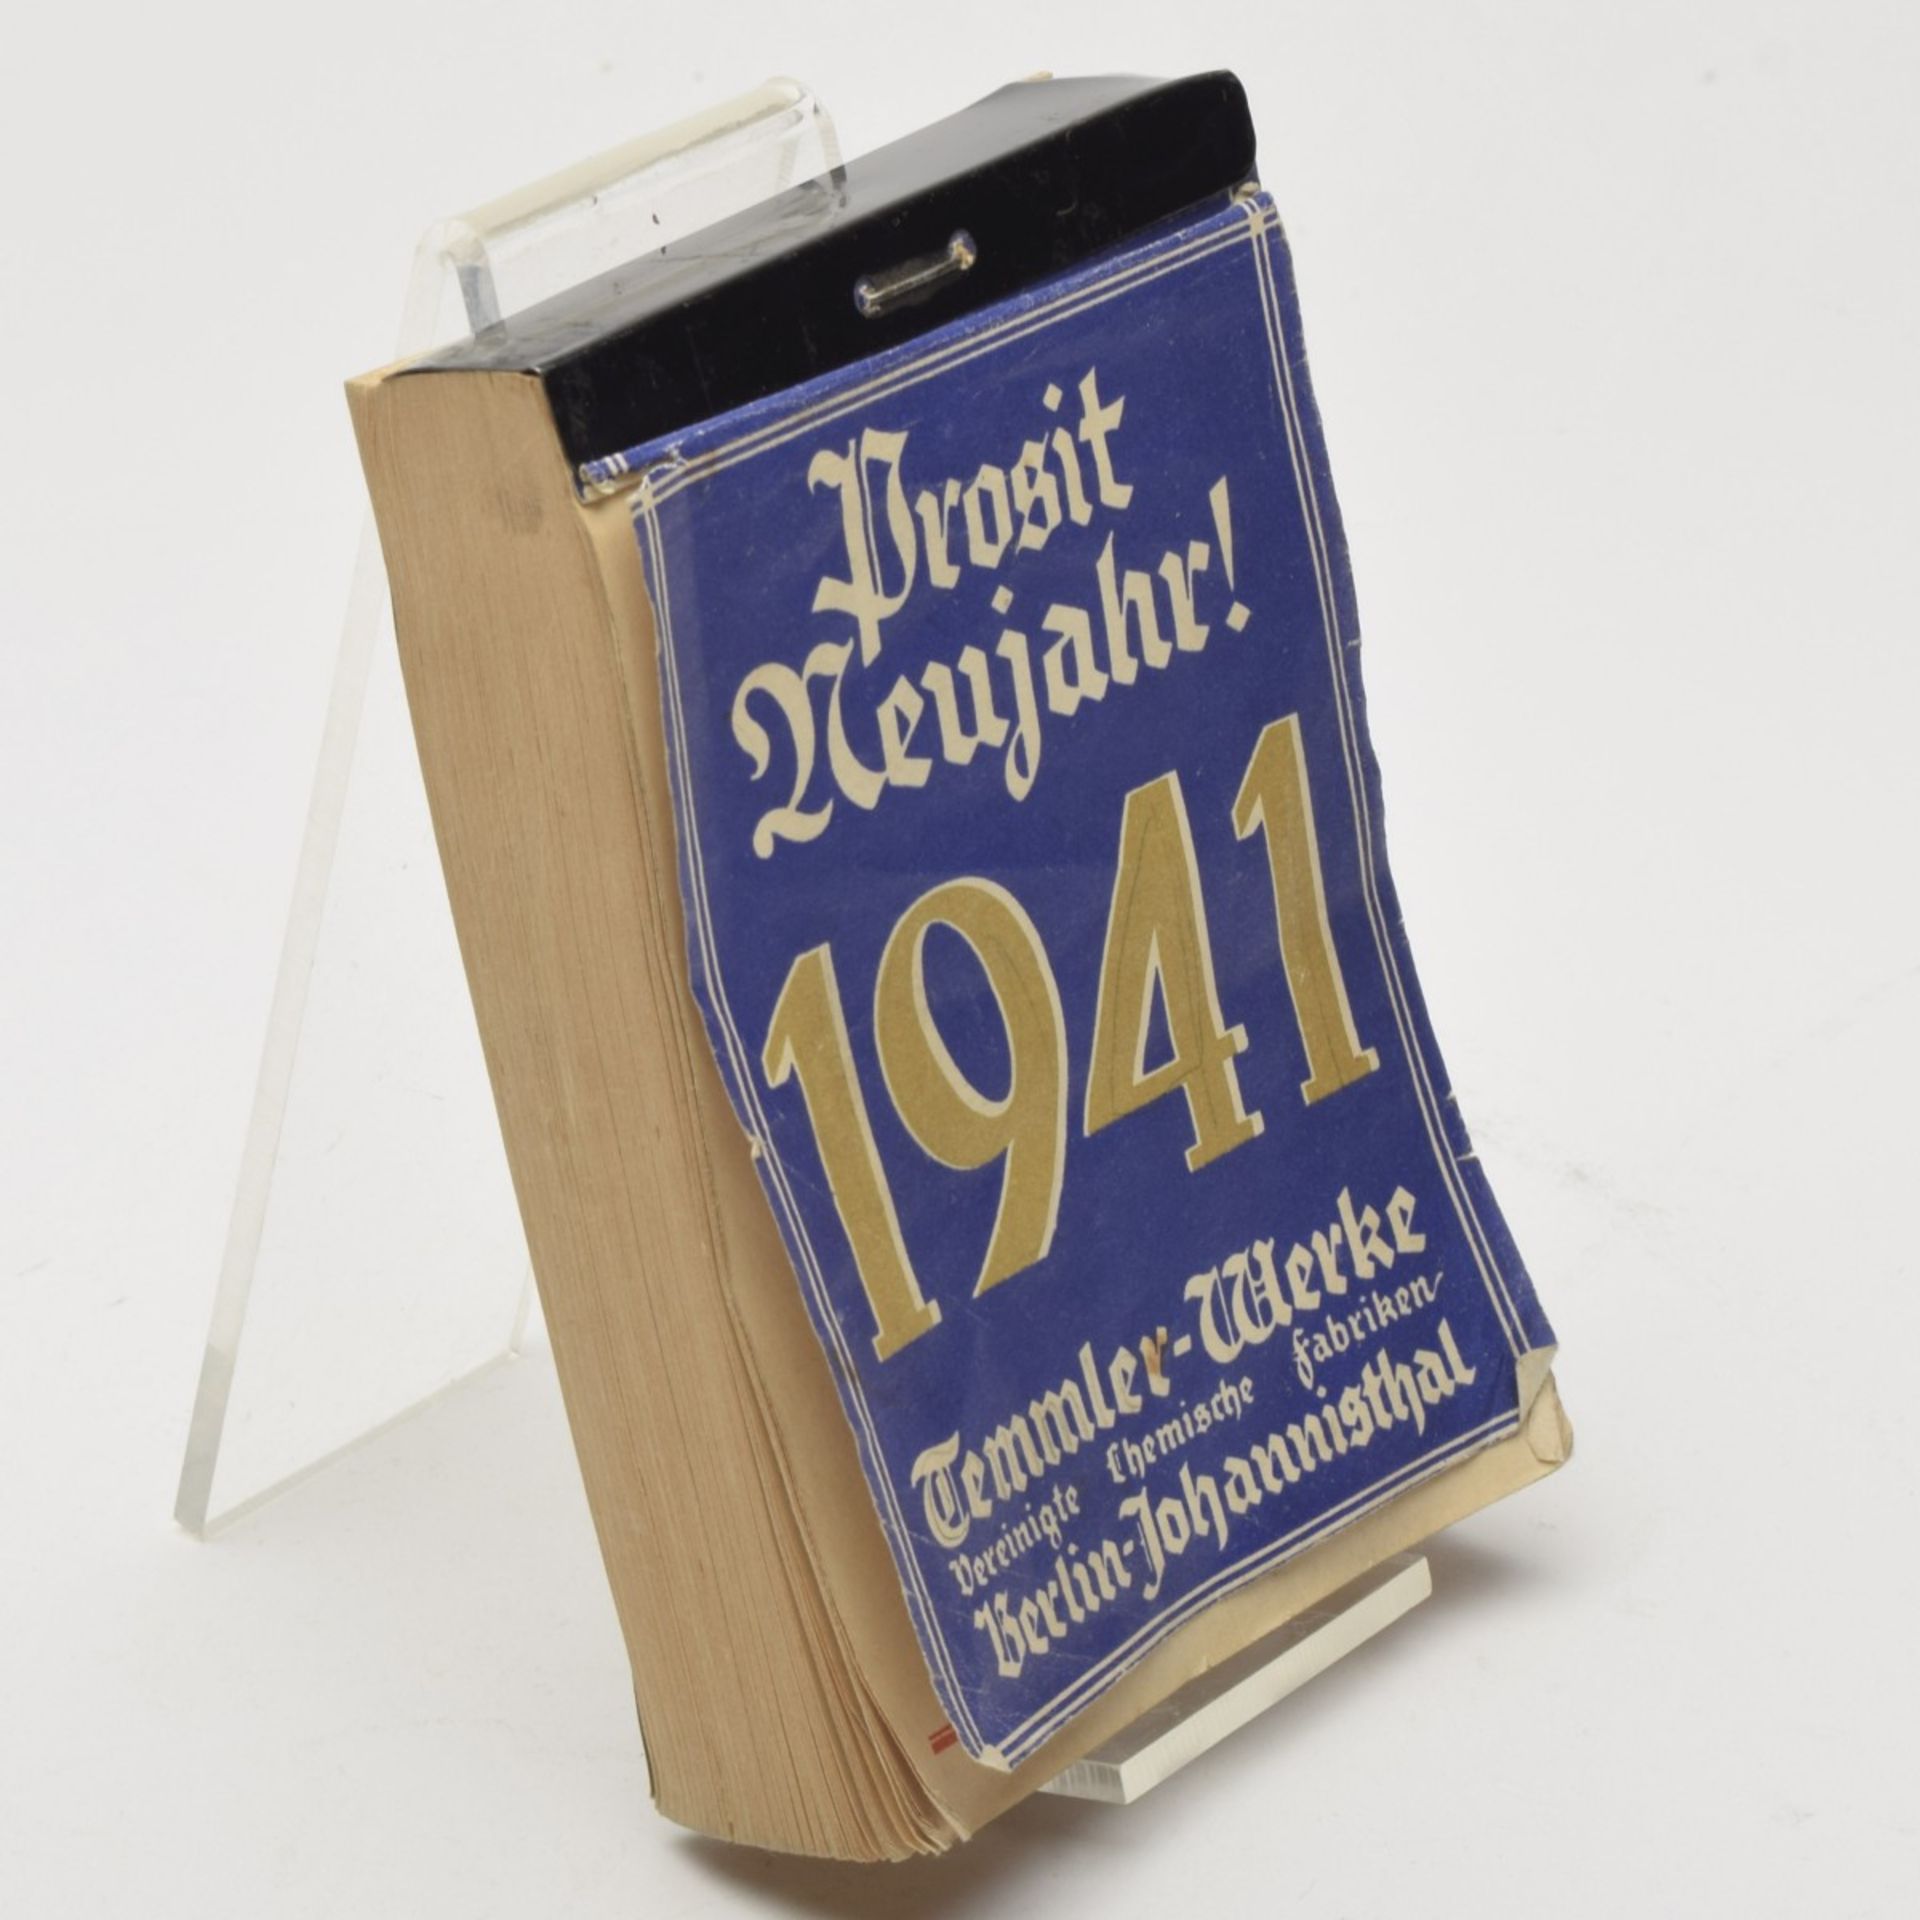 Abreißkalender 1941 - Image 3 of 4